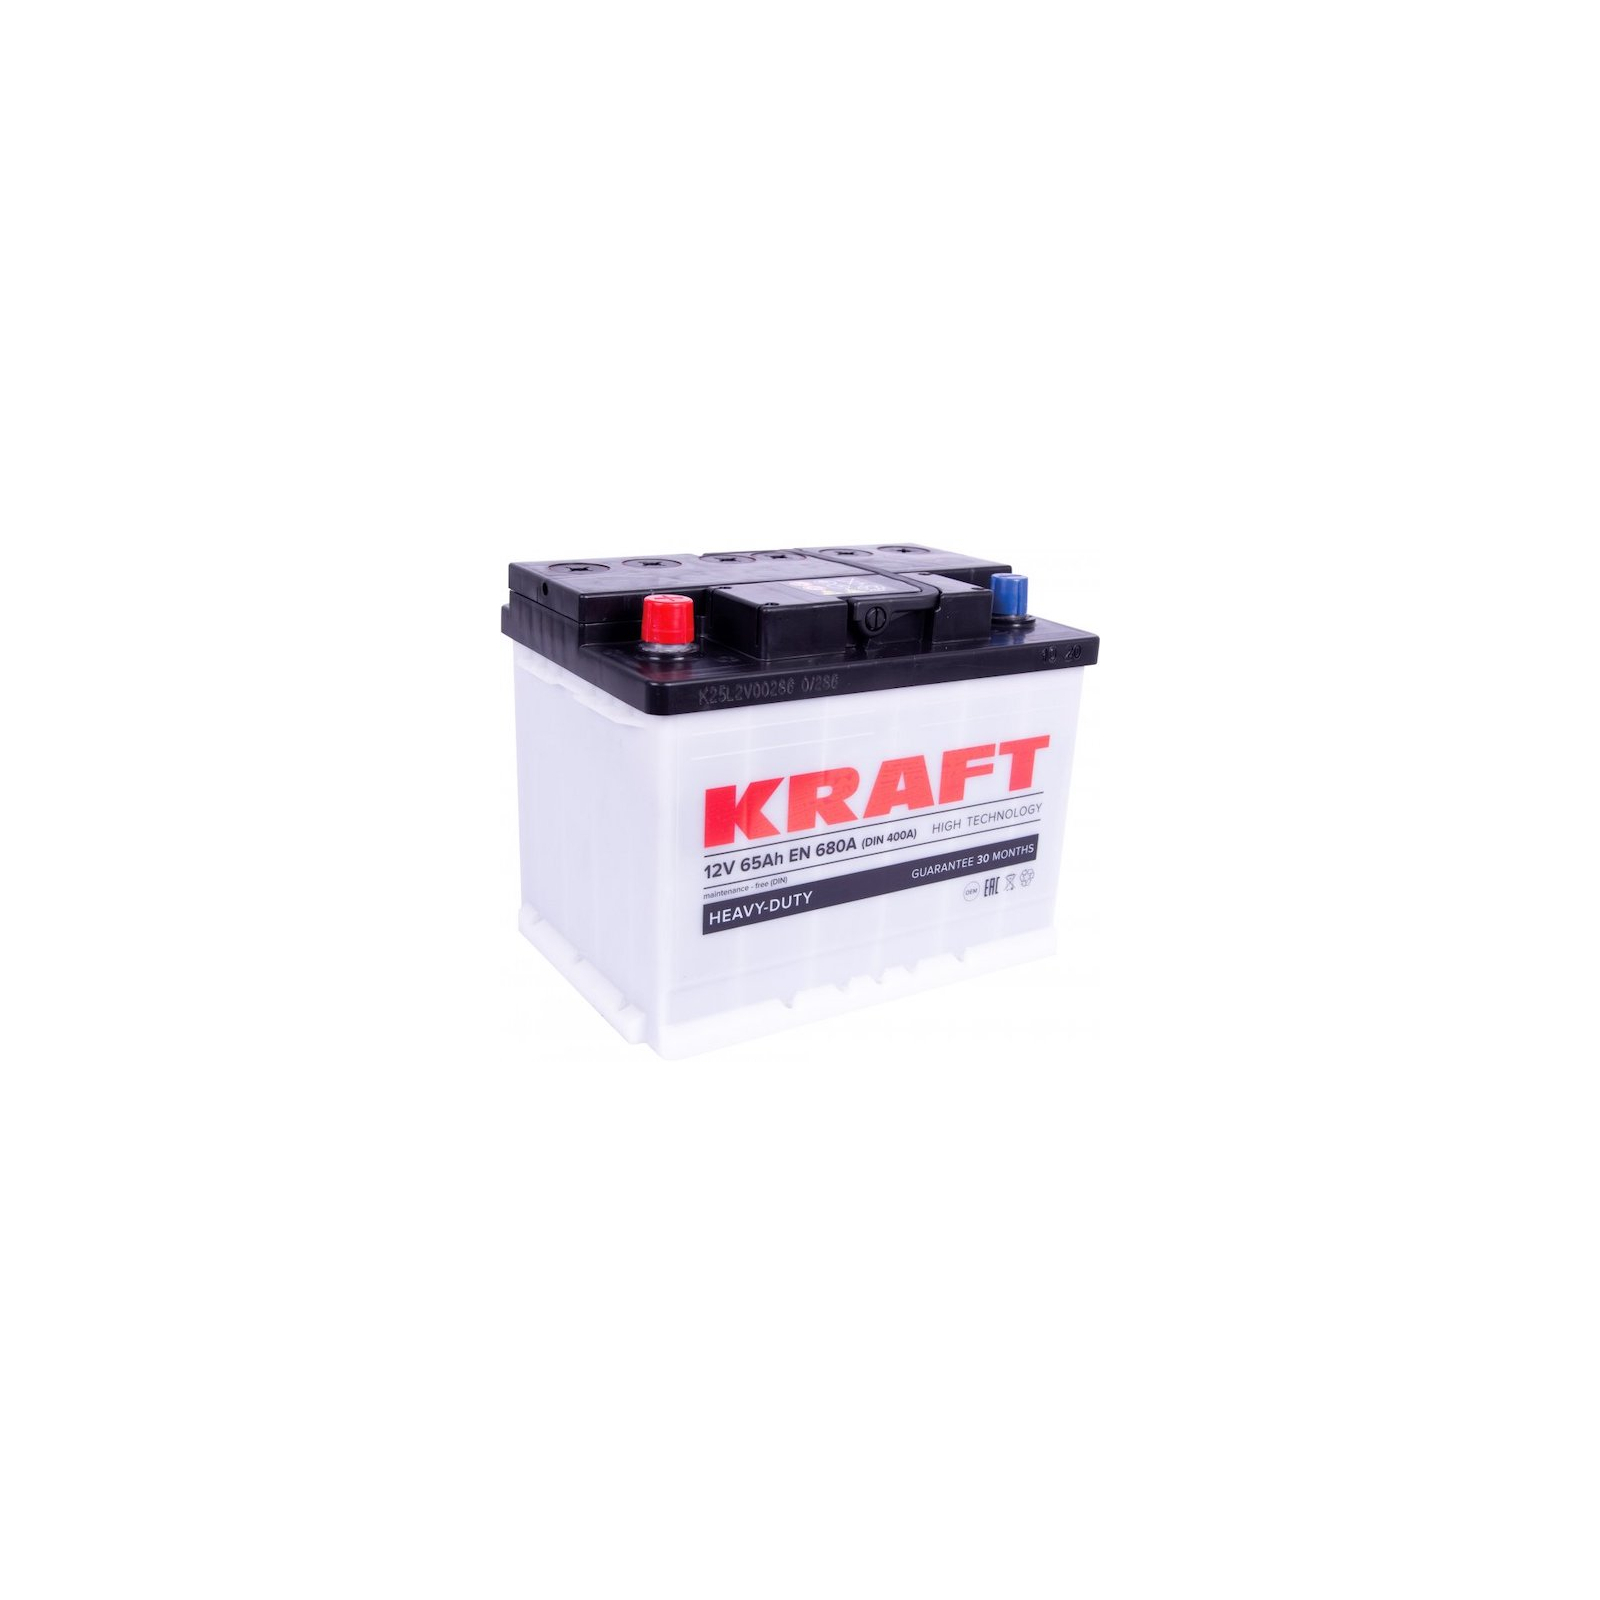 Аккумулятор автомобильный KRAFT 65Ah (76331)